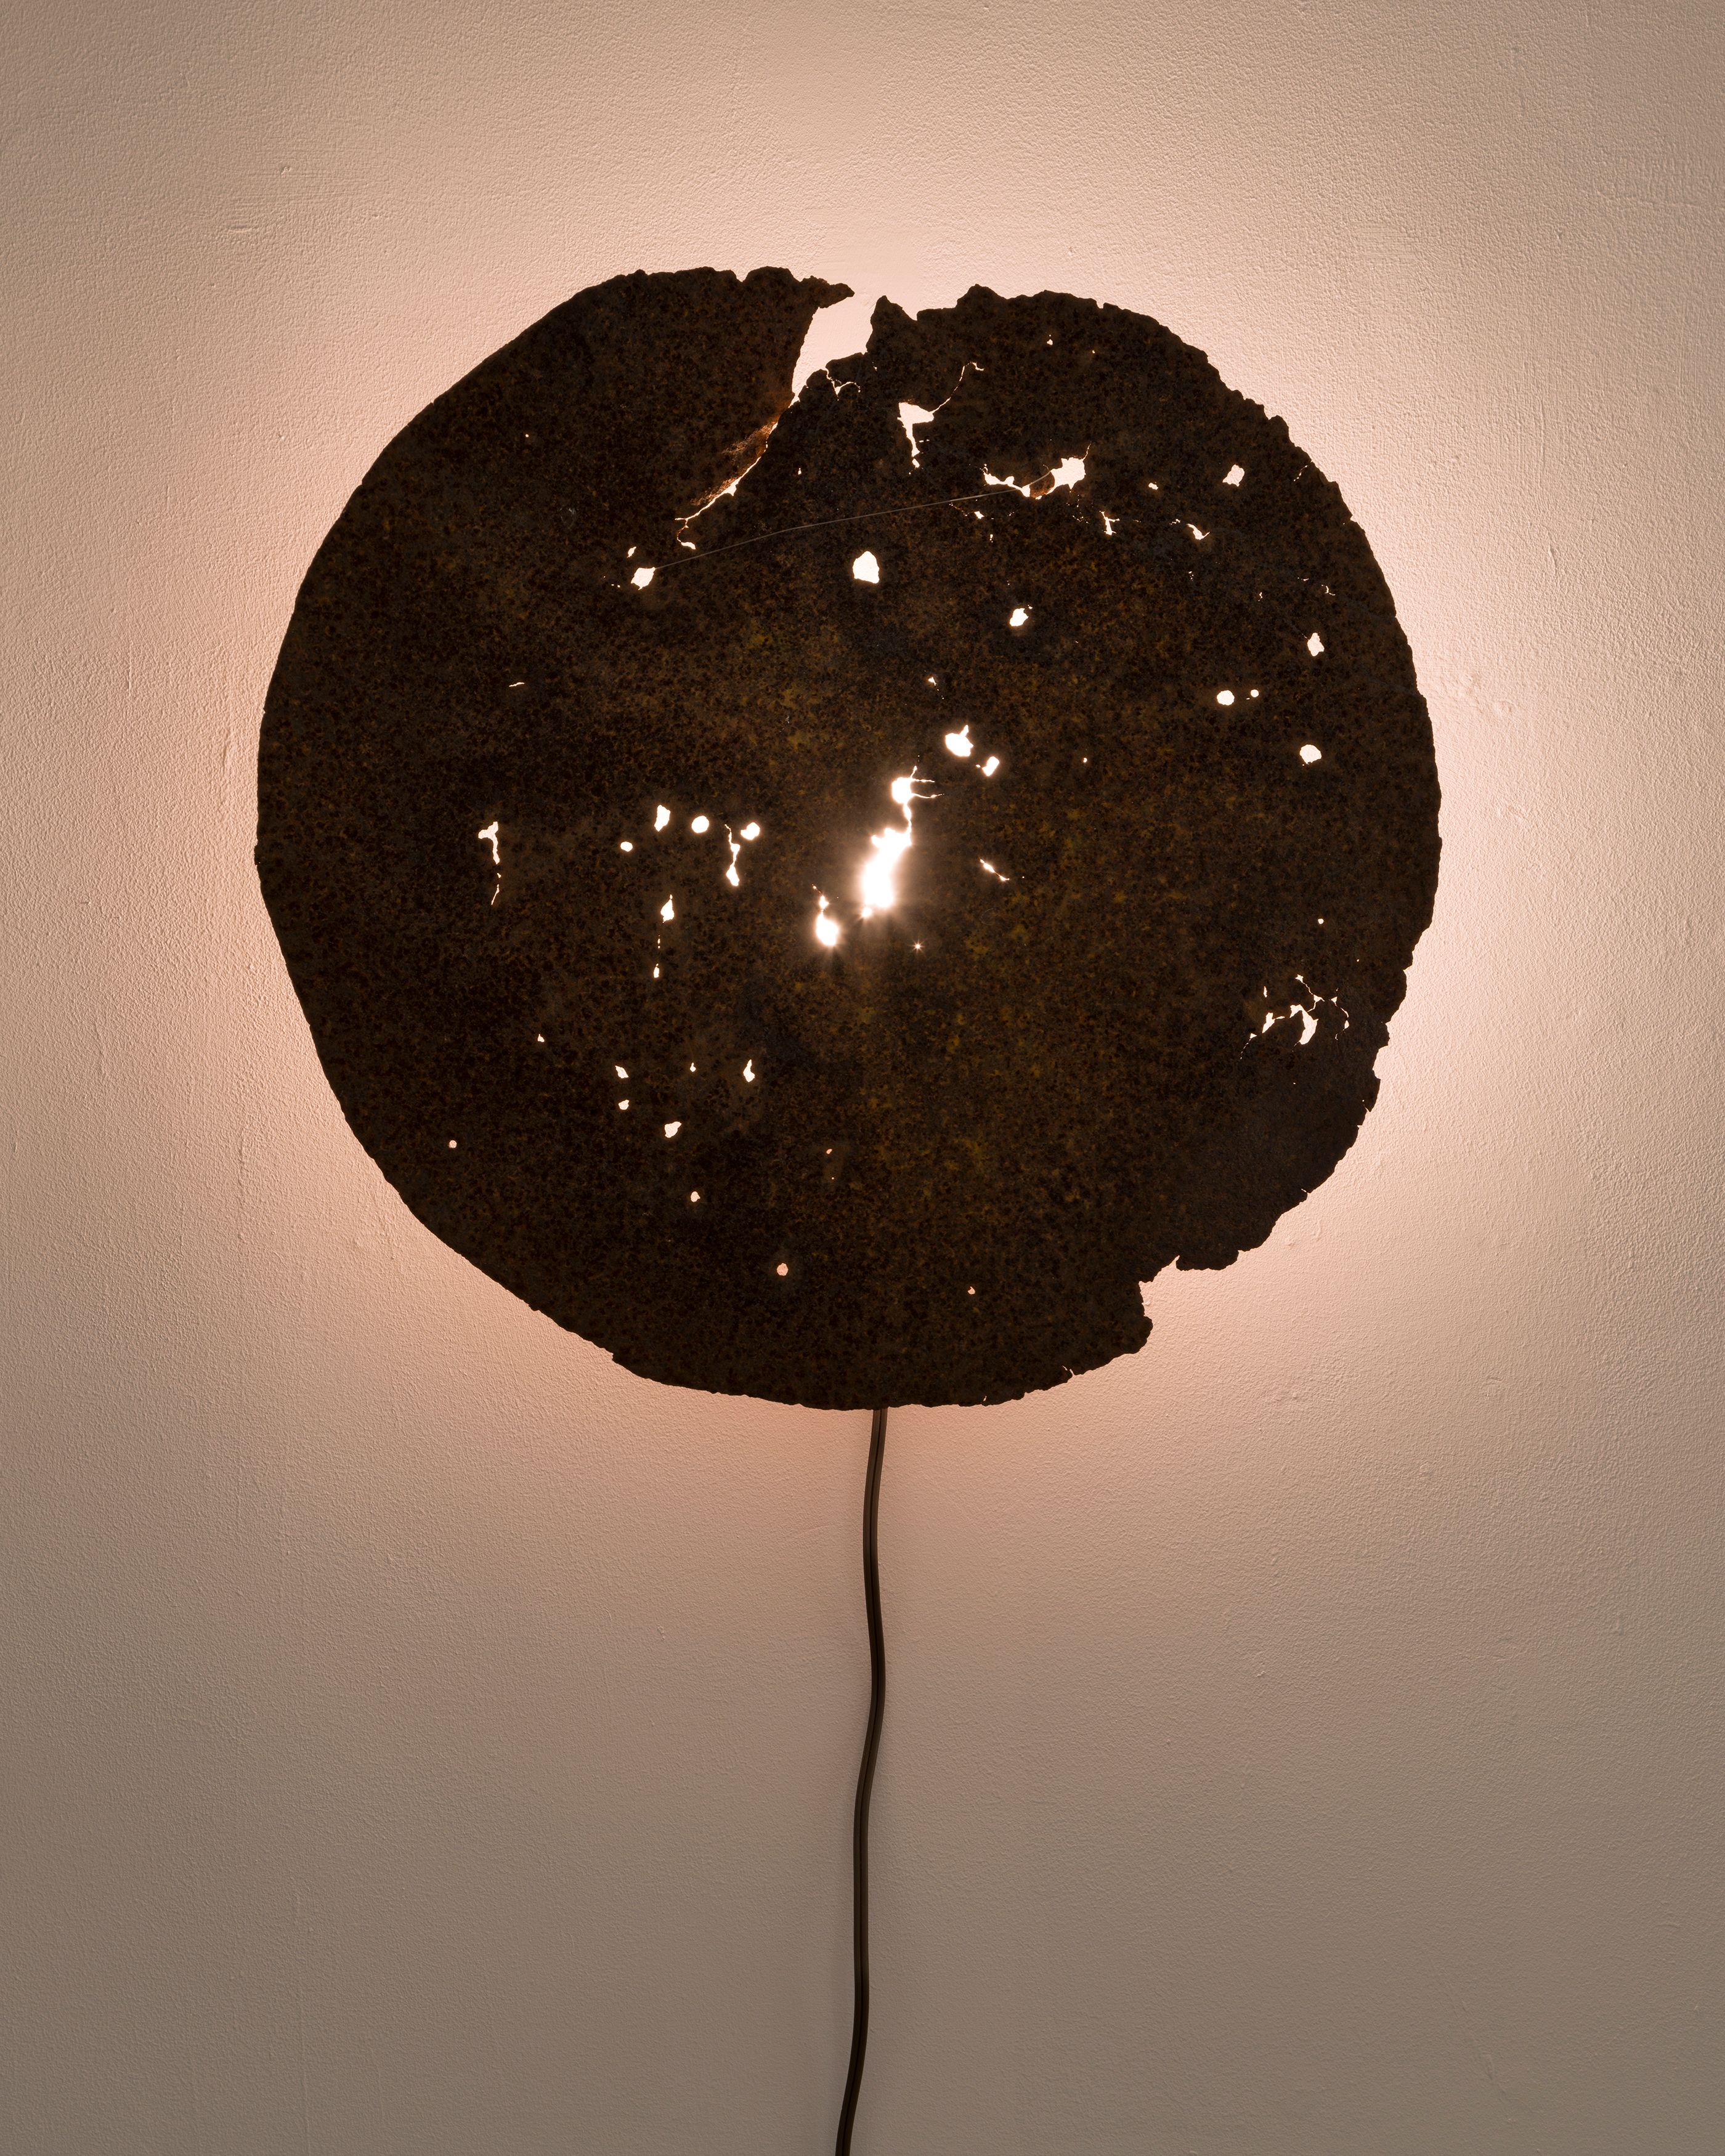 Rafal Bujnowski, Sun / Lamp, 2022, detail of metal, paint, light, 56 cm diameter x 1 cm (22 in. diameter x 3/8 in.)